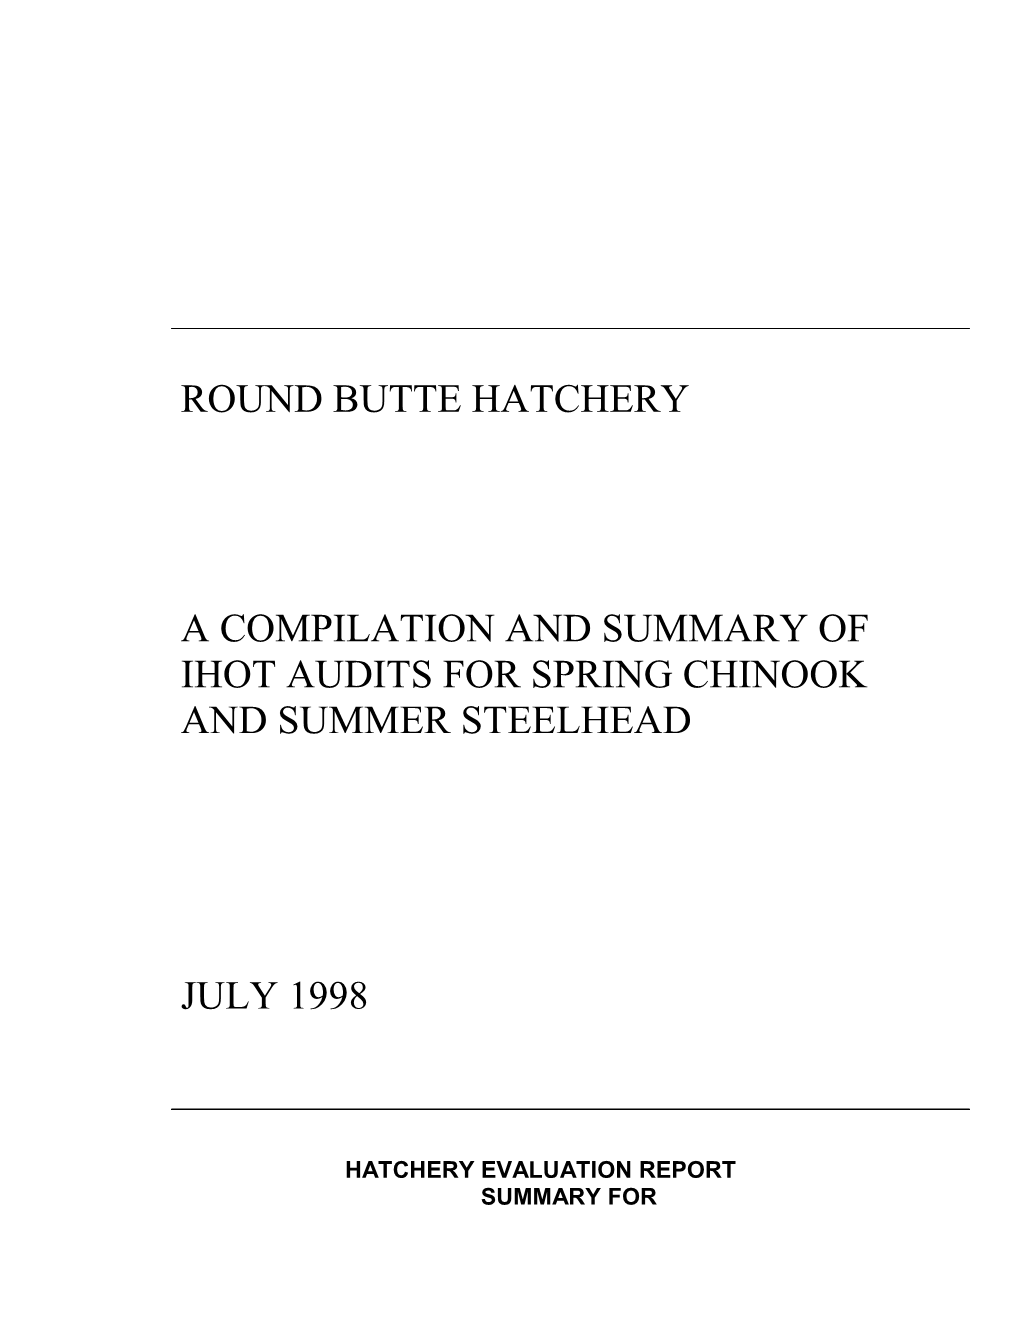 Round Butte Hatchery